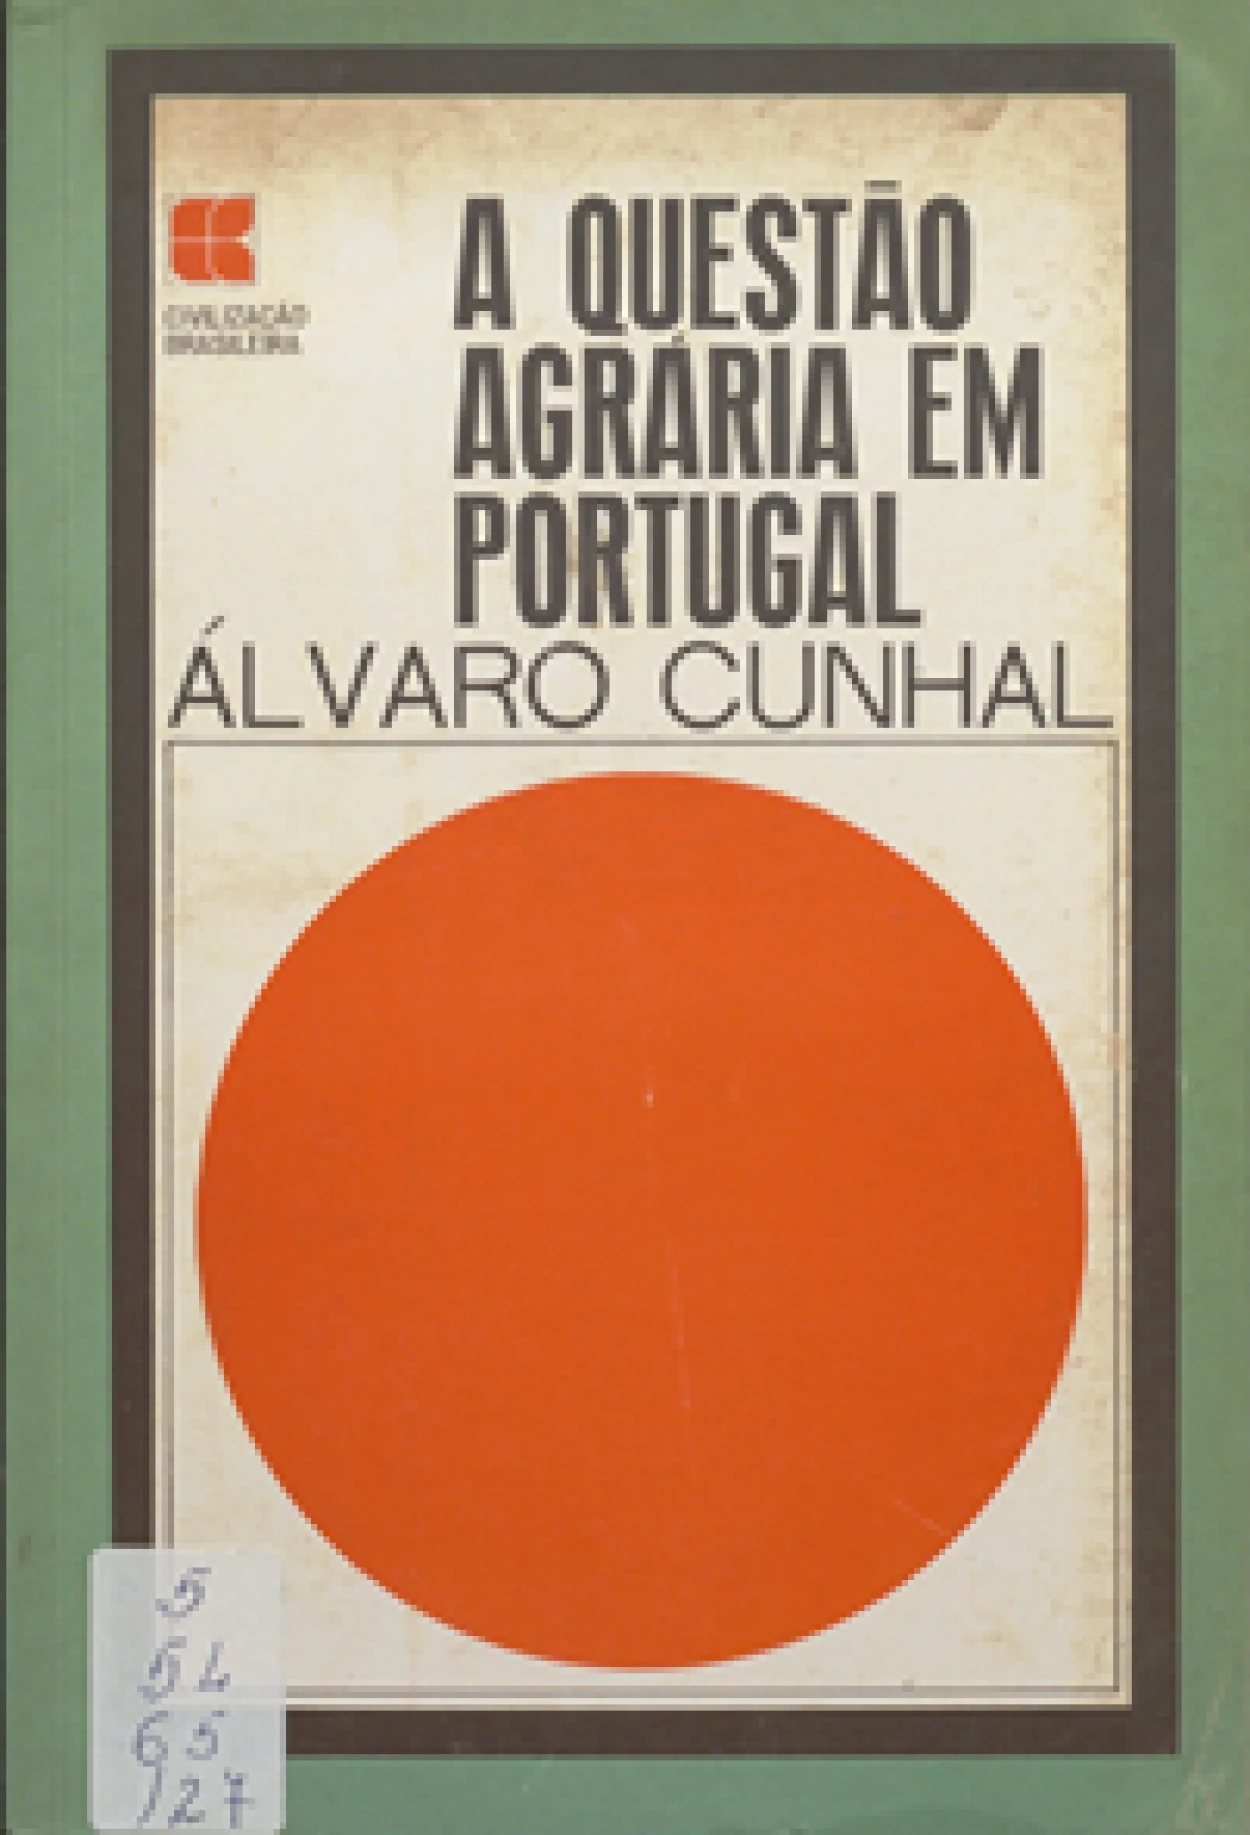 Cunhal, Álvaro, 1913–2005
A questão agrária em Portugal.
Rio de Janeiro : Civilização Brasileira, 1968.